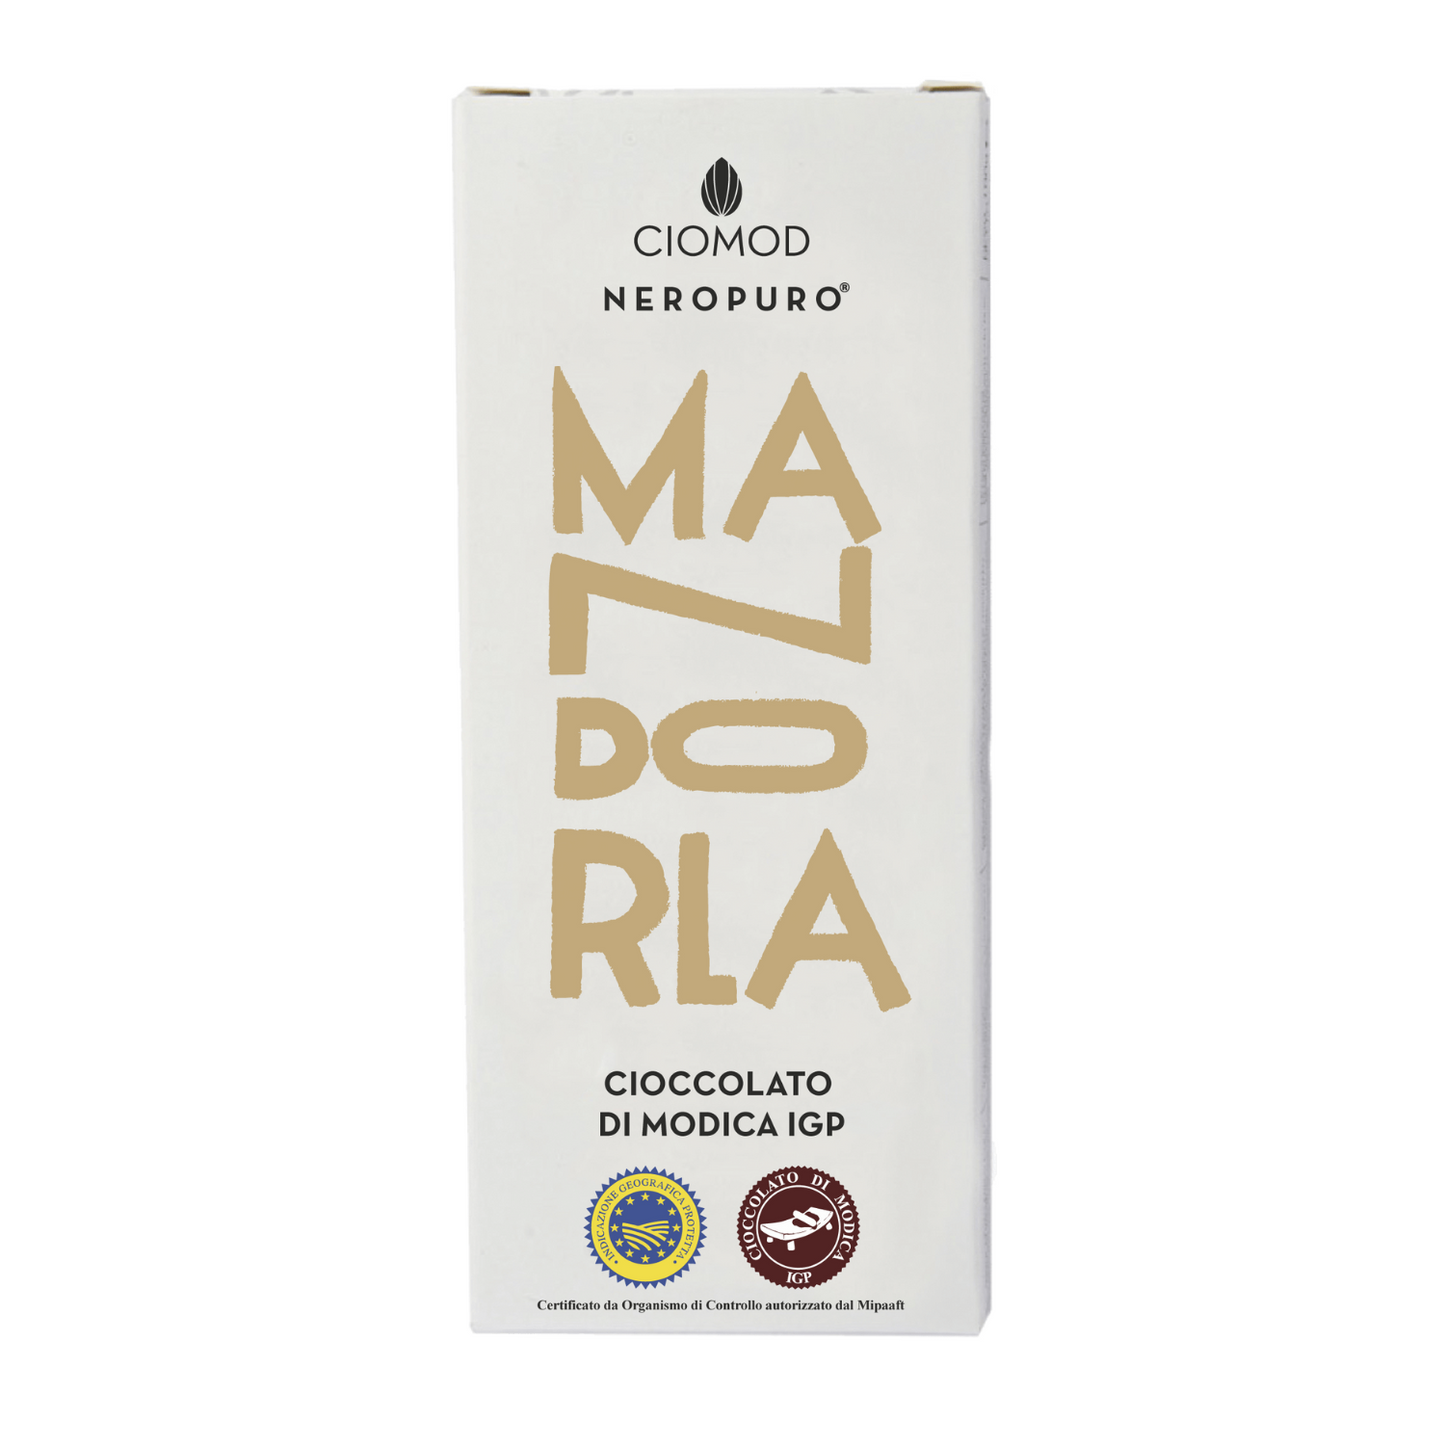 Cioccolato di Modica Igp Mandorla - Ciomod